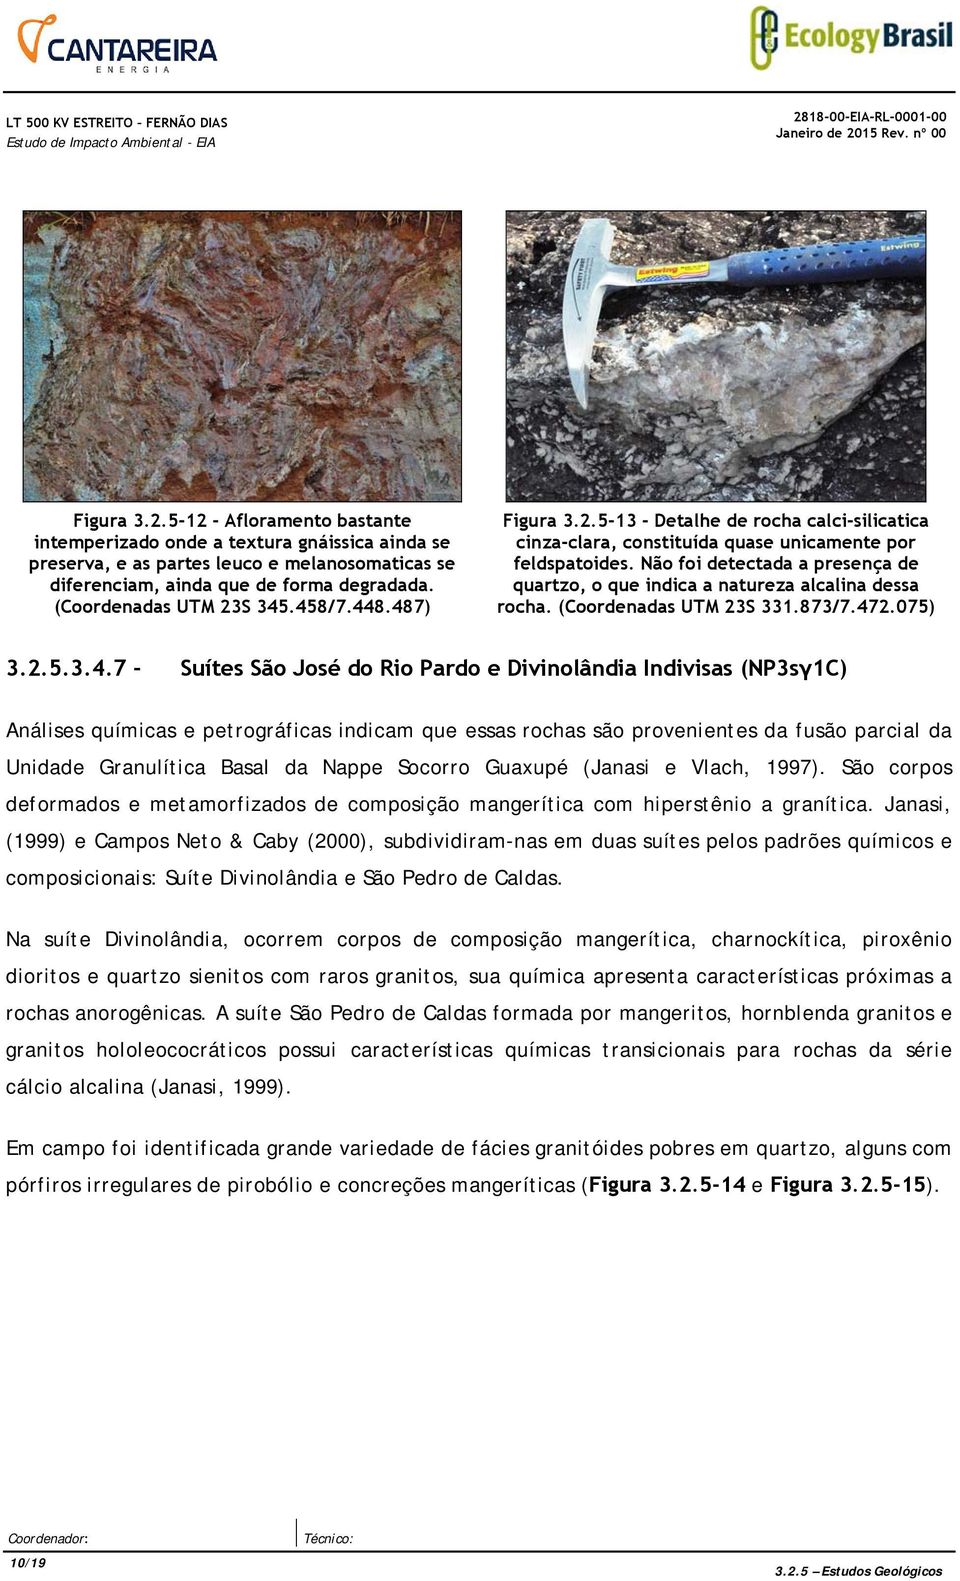 Não foi detectada a presença de quartzo, o que indica a natureza alcalina dessa rocha. (Coordenadas UTM 23S 331.873/7.47